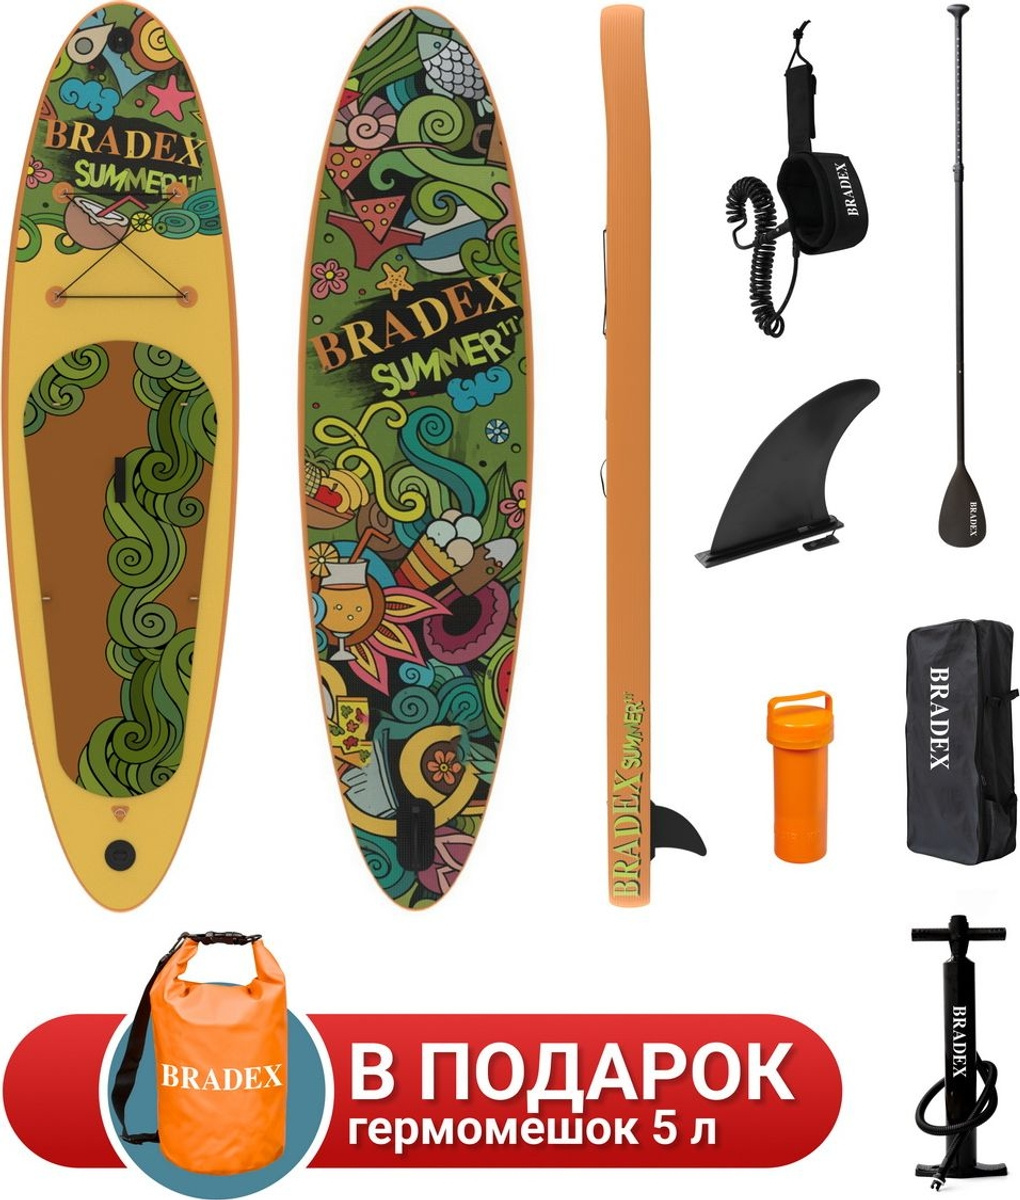 Bradex Bradex Summer 11’ из каталога универсальных SUP досок в Санкт-Петербурге по цене 33590 ₽